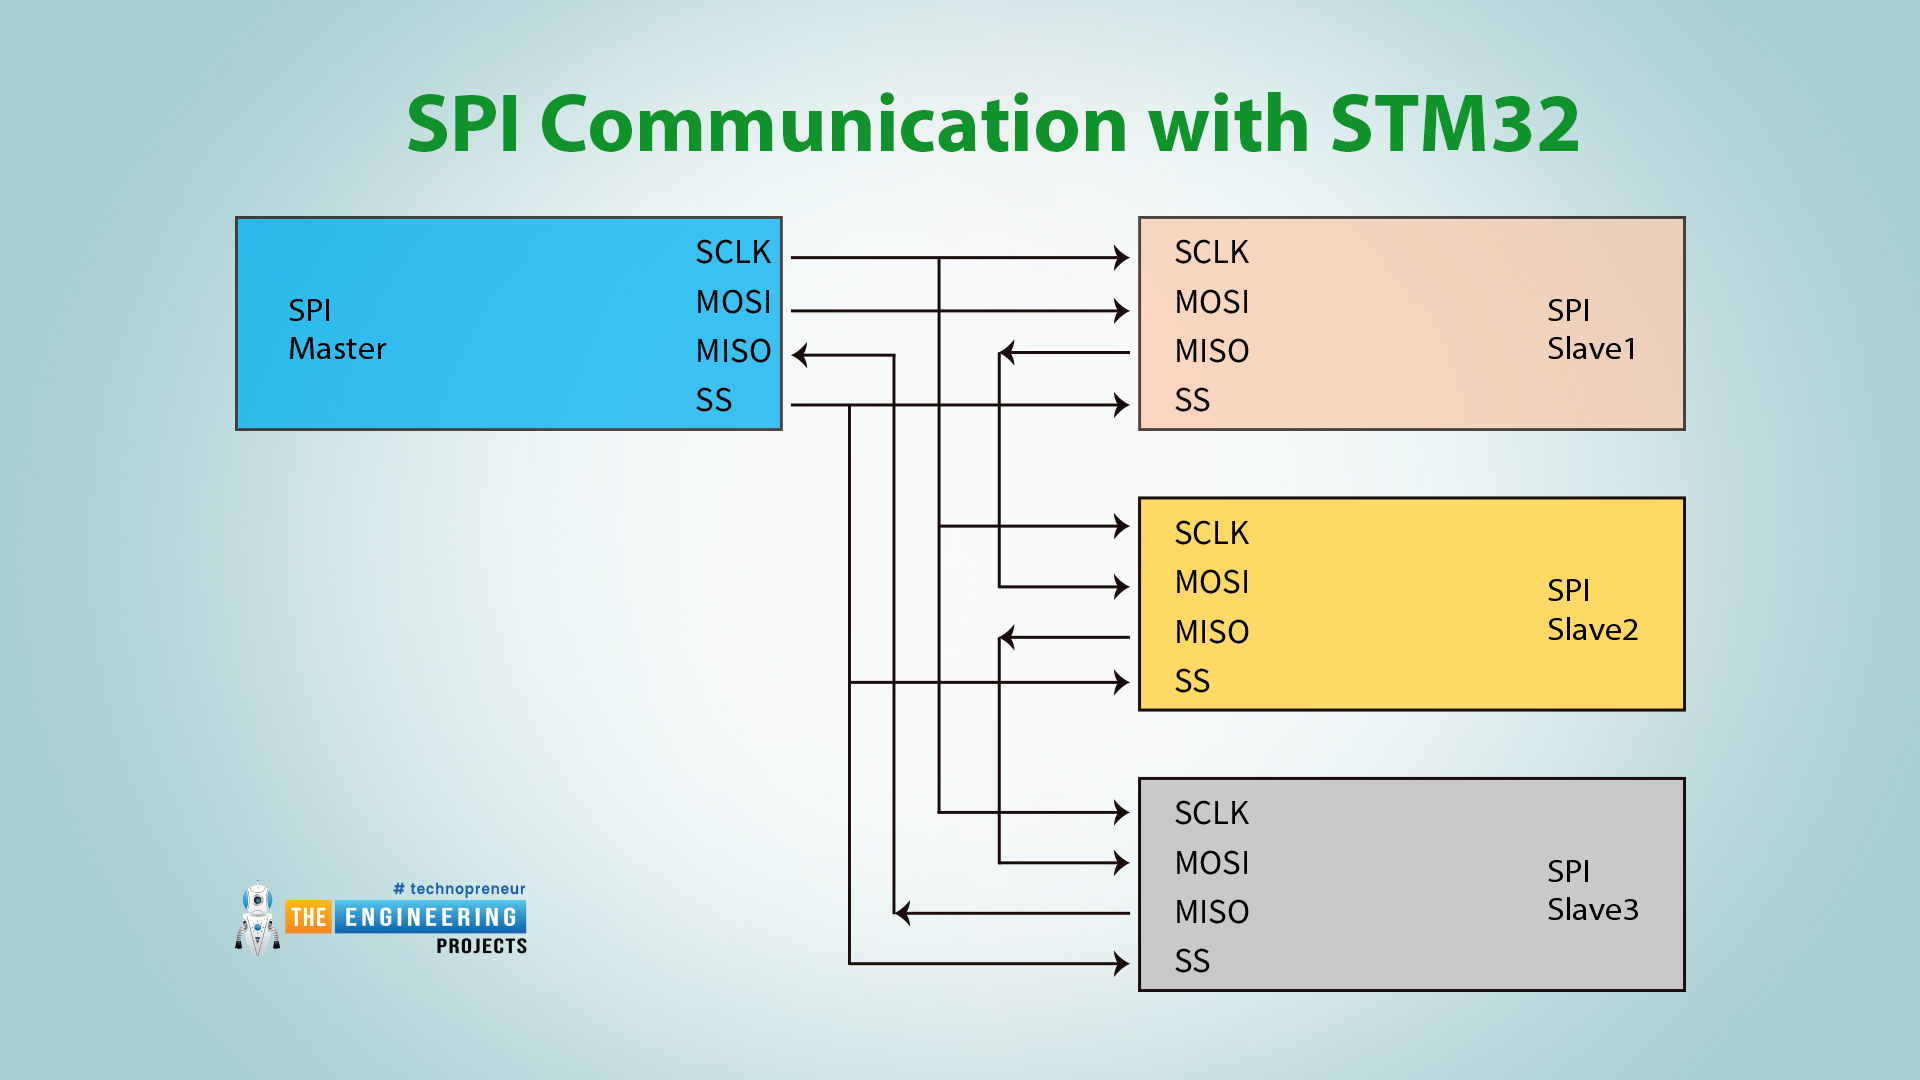 SPI communication with STM32, SPI in polling mode, SPI in interrupt mode, SPI in DNA mode, SCLK, MOSI, SS